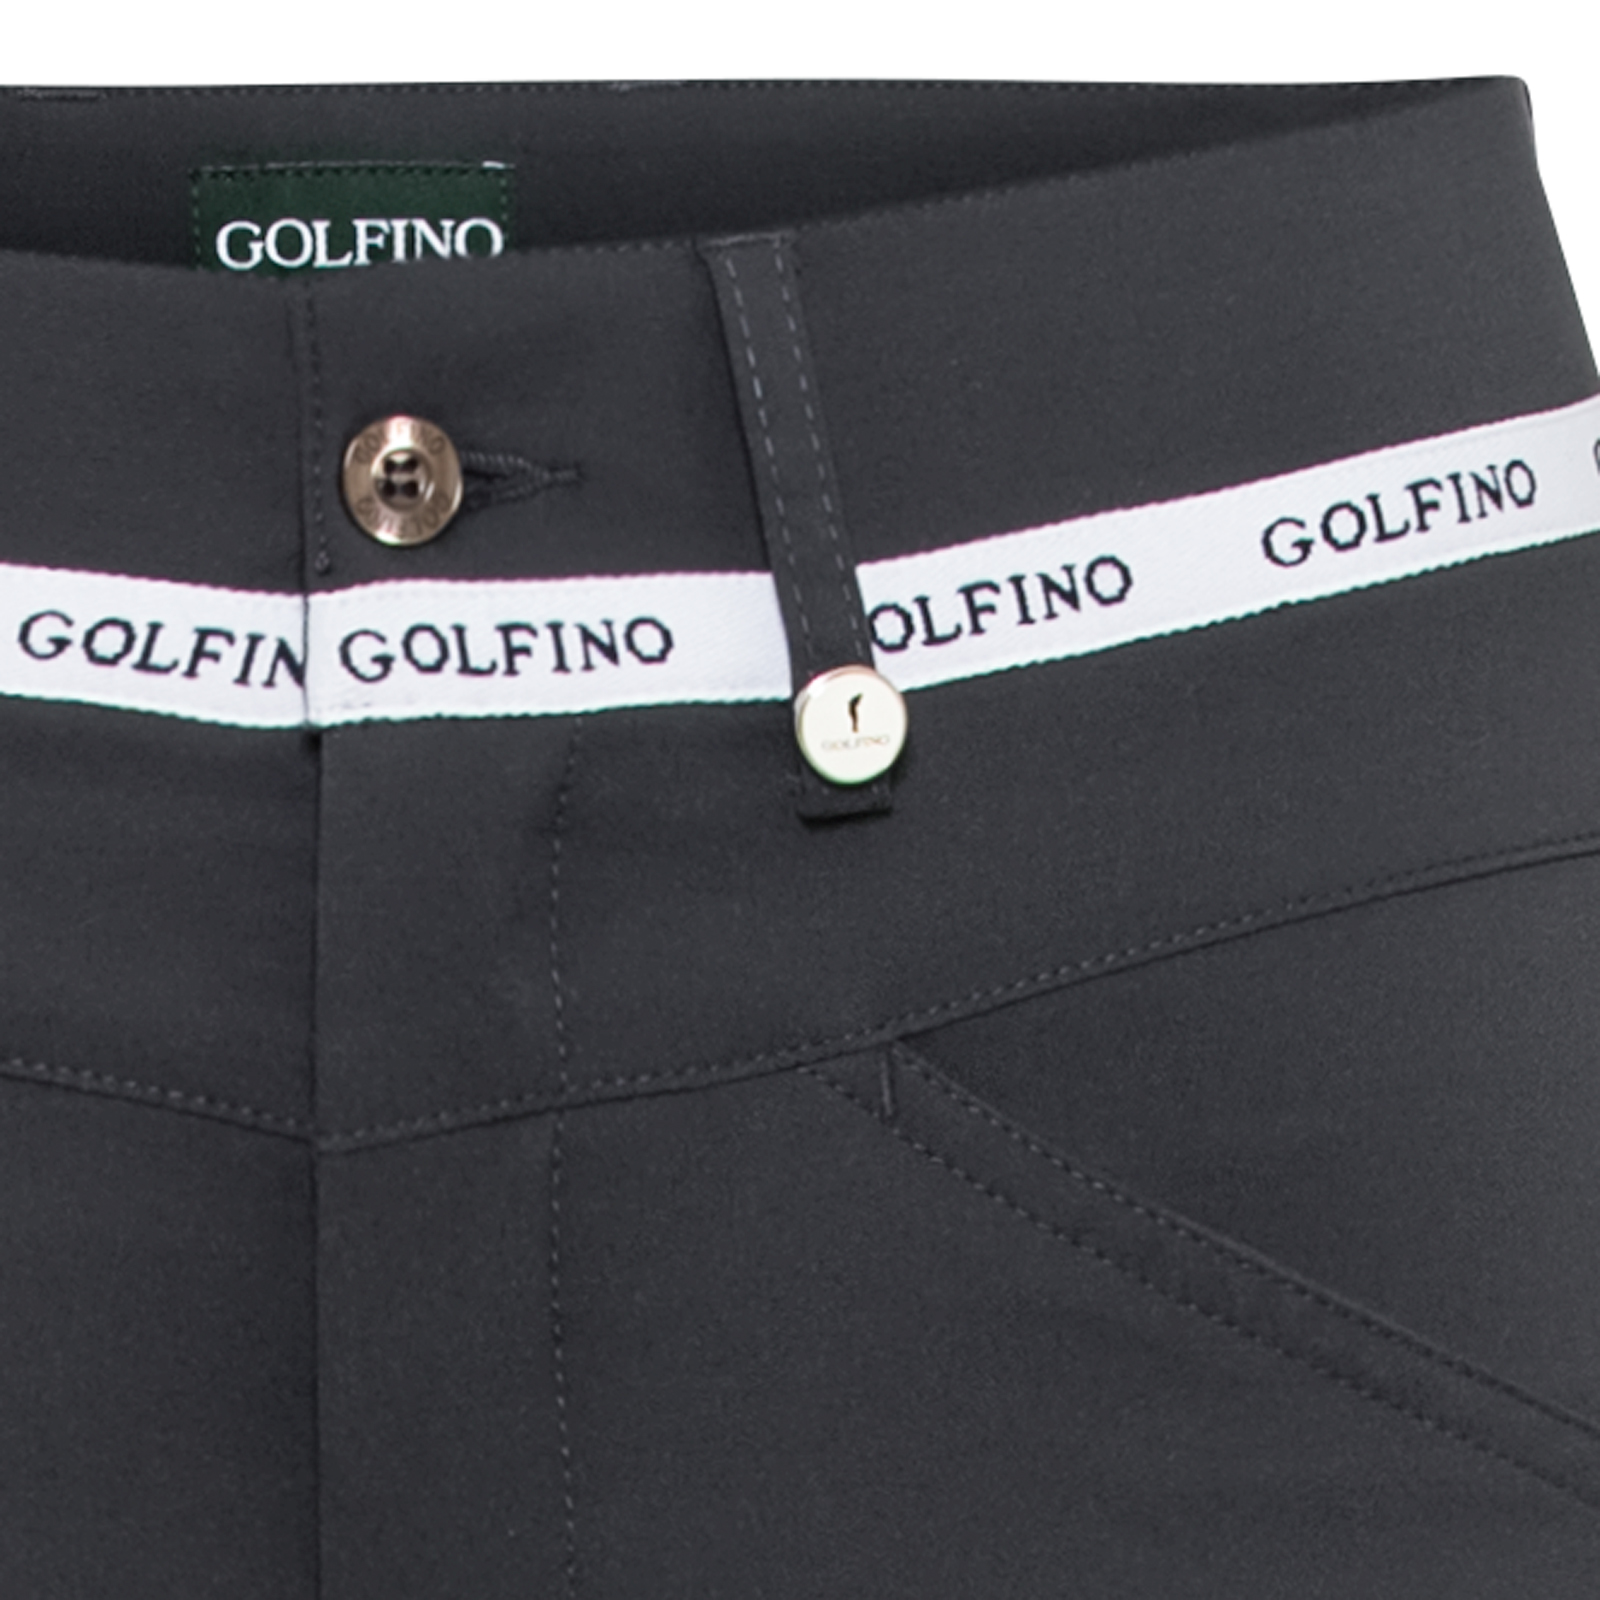 Pantalones de golf abrigados para mujer con banda decorativa con el logotipo